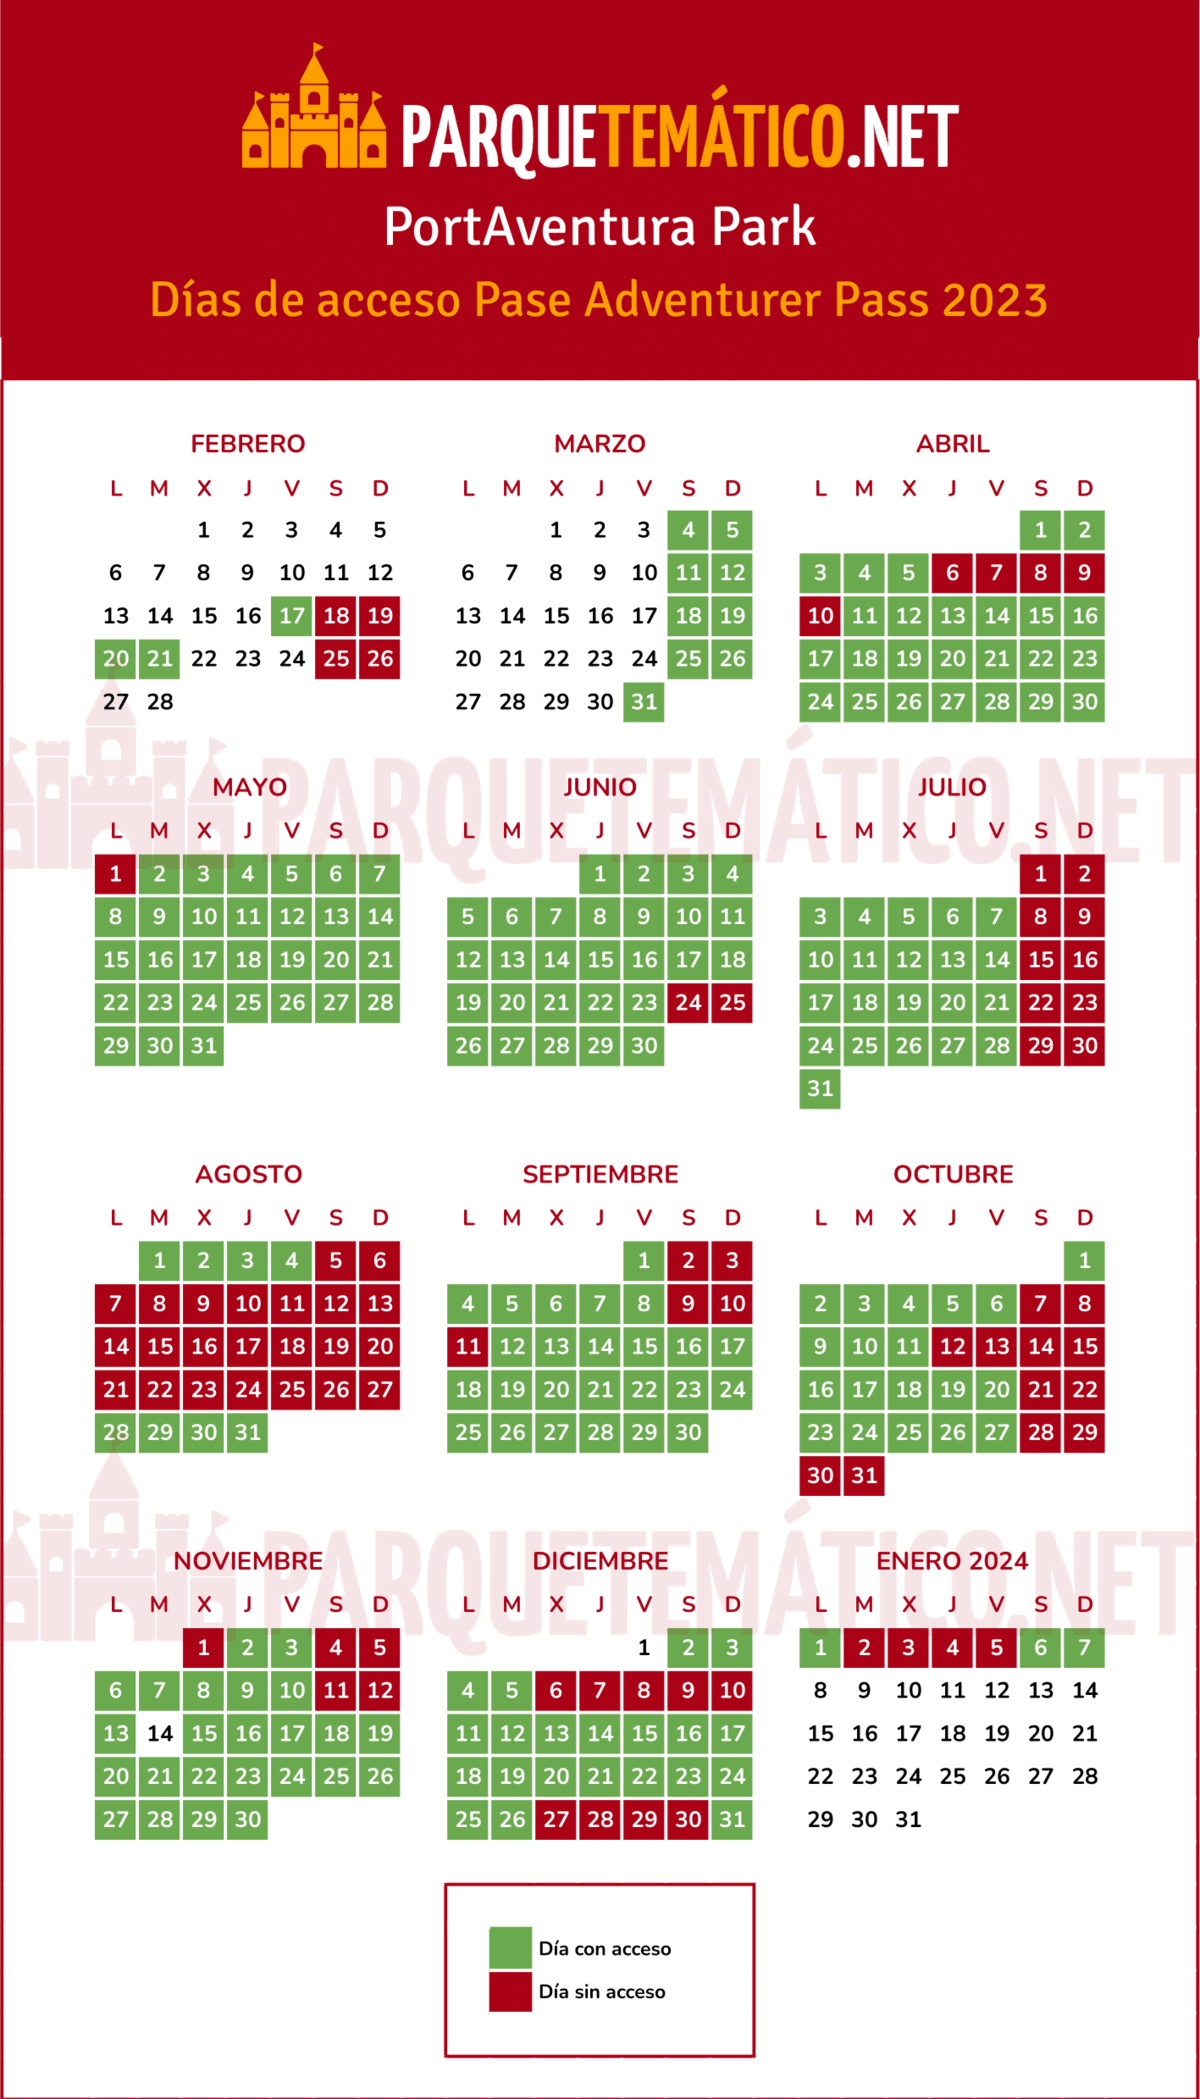 Calendario dias acceso Pase Anual Adventurer PortAventura Park 2023